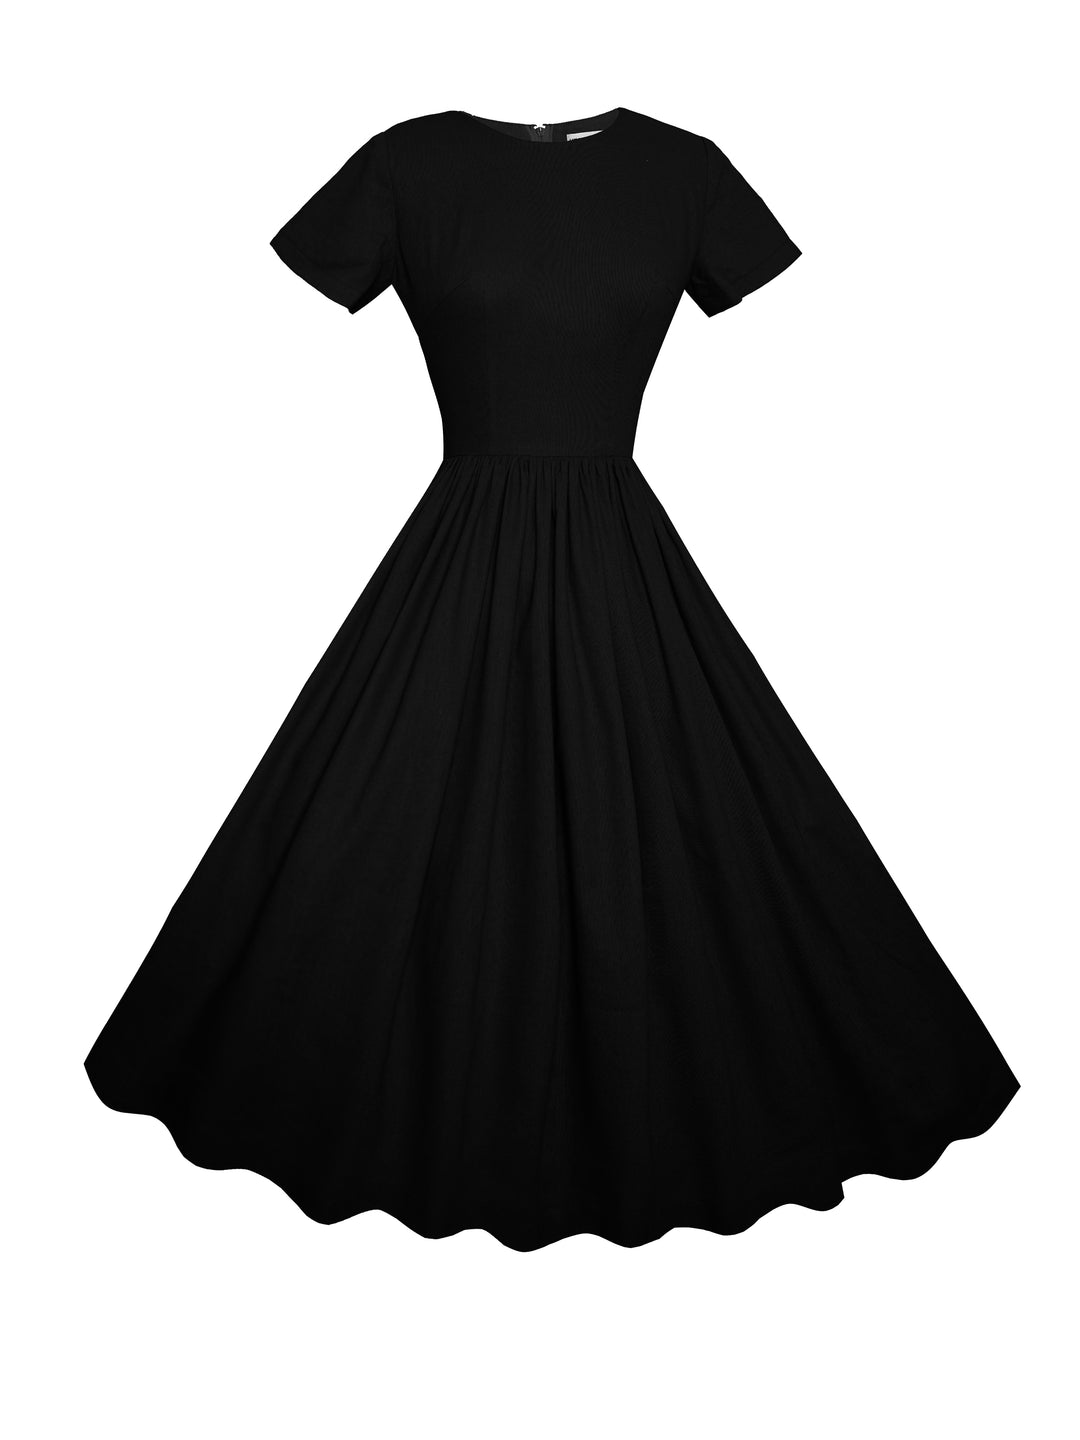 MTO - Dorothy Dress in Midnight Black Linen